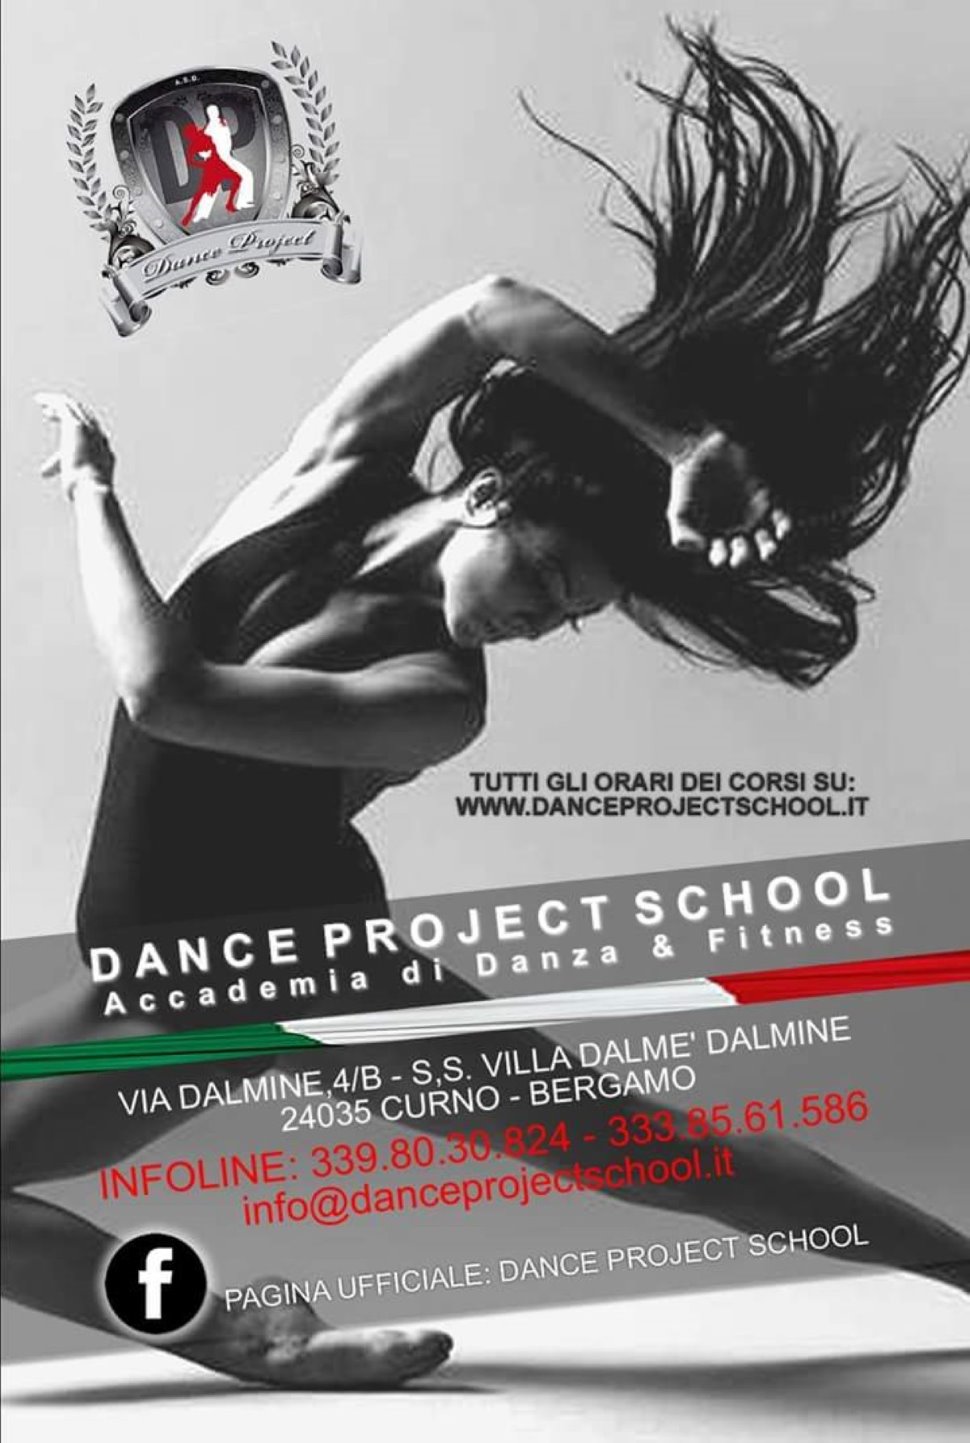 DANCE PROJECT SCHOOL...
Accademia di Danza e Fitness ...
Corsi tutto l'anno per adulti,
ragazzi e bambini dai 4 anni